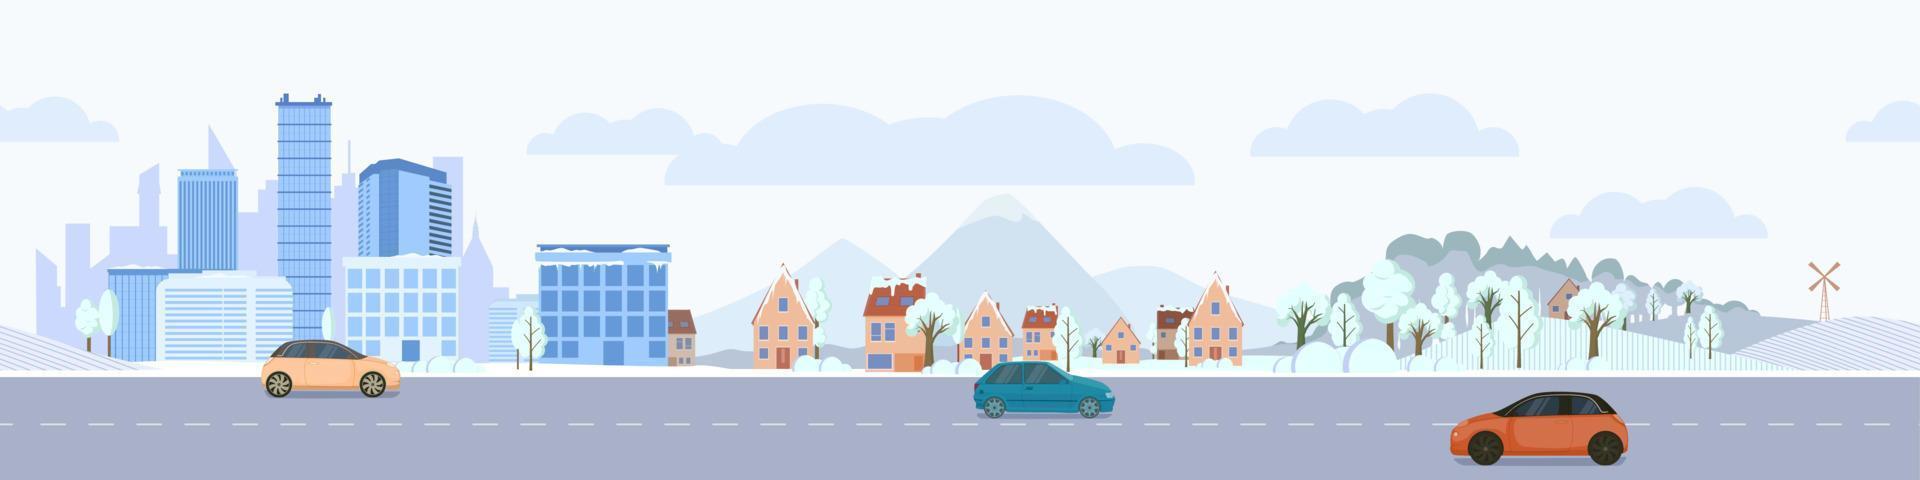 paysage d'hiver urbain avec autoroute. gratte-ciel bleus couverts de neige avec des maisons privées et des voitures de vecteur de parc et de passage.